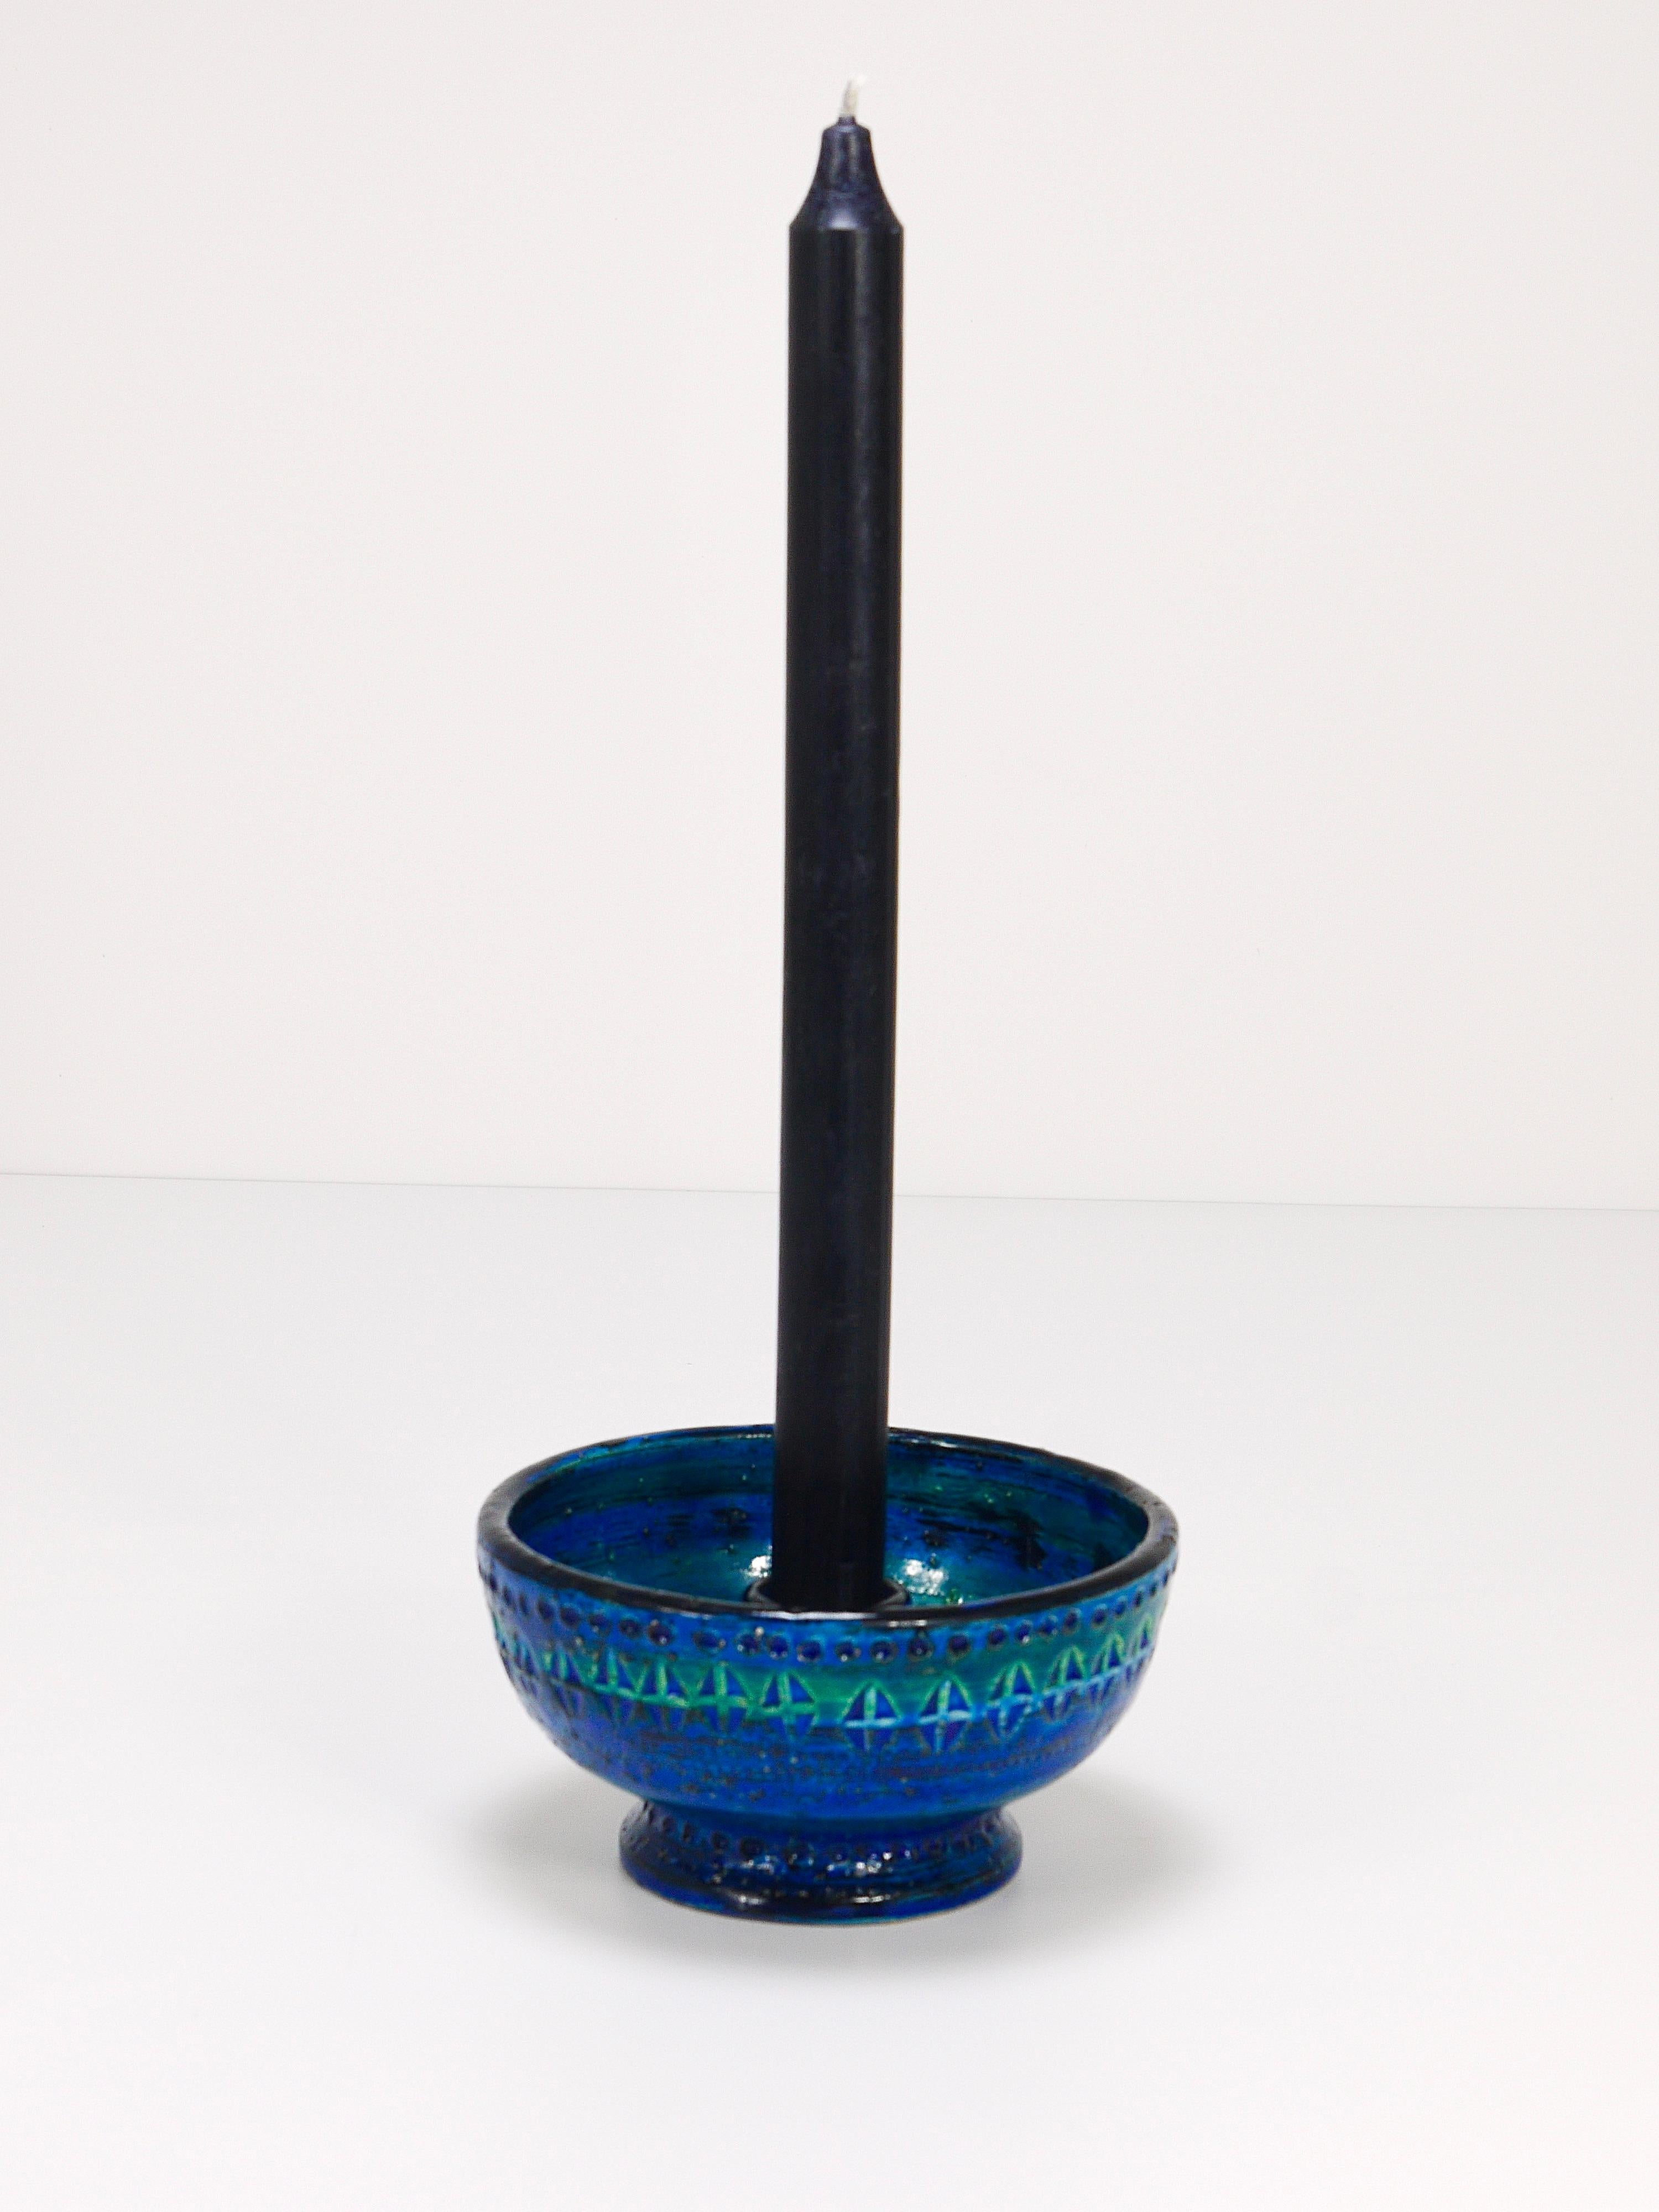 Ein schöner und dekorativer runder Kerzenhalter oder Kerzenständer aus der Mitte des Jahrhunderts in Rimini-Blau glasiert. Entworfen von Aldo Londi, hergestellt von Bitossi Ceramiche / Italien in den 1950er Jahren. Handgefertigt mit handgeschnitztem